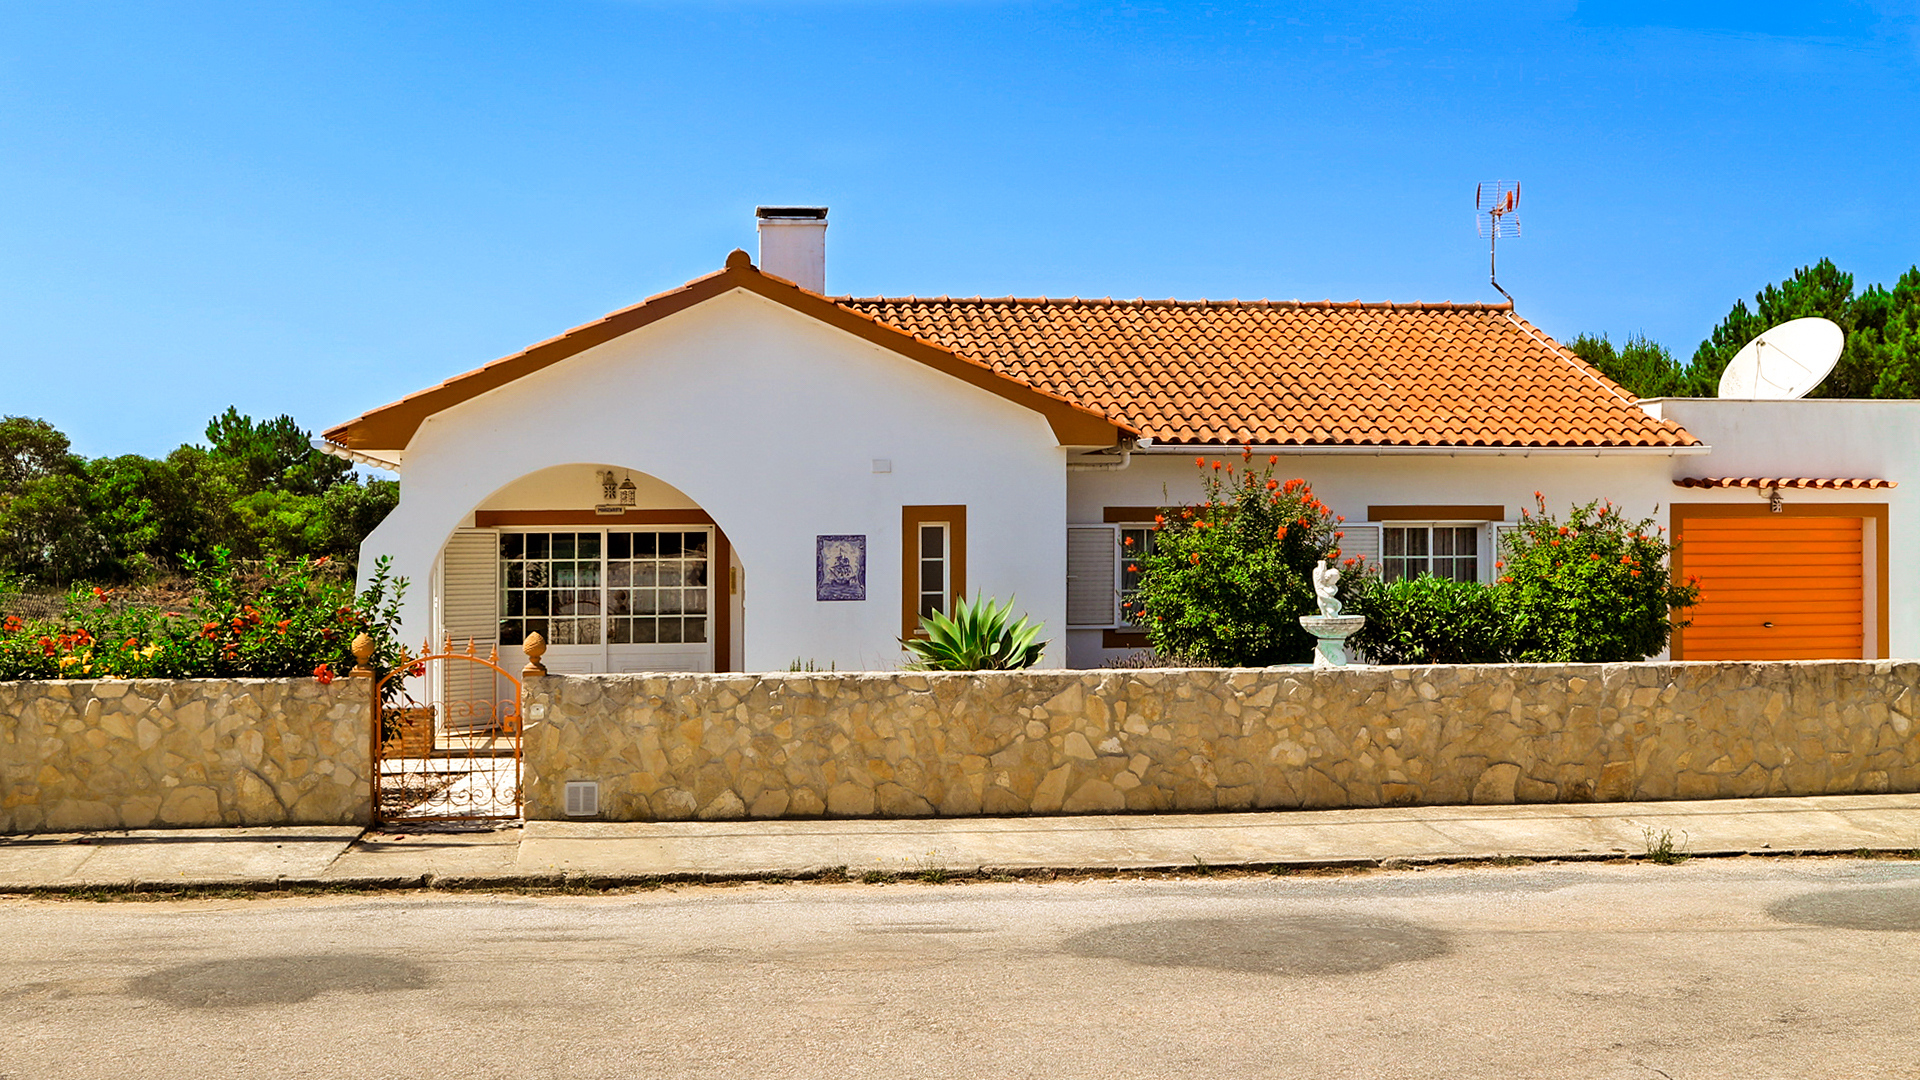 3 SZ Villa mit Garage und Dachterrasse in Vale da Telha, Westküste | LG1542 Diese Villa liegt auf einem mit 1502 qm ungewöhnlich grossen Grundstück in der beliebten Wohnanlage Vale da Telha an der Westküste der Algarve, nur wenige Autominuten von den Stränden Arrifana und Monte Clerigo entfernt.